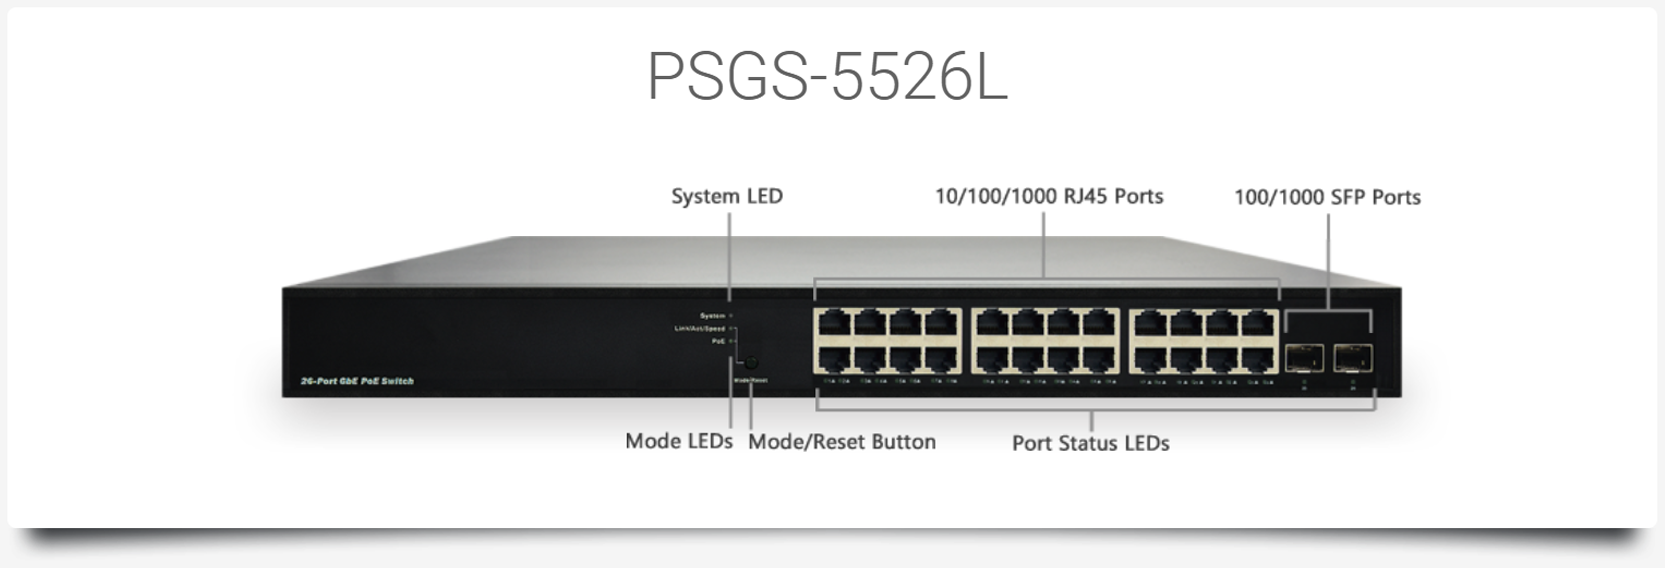 PSGS-5526L